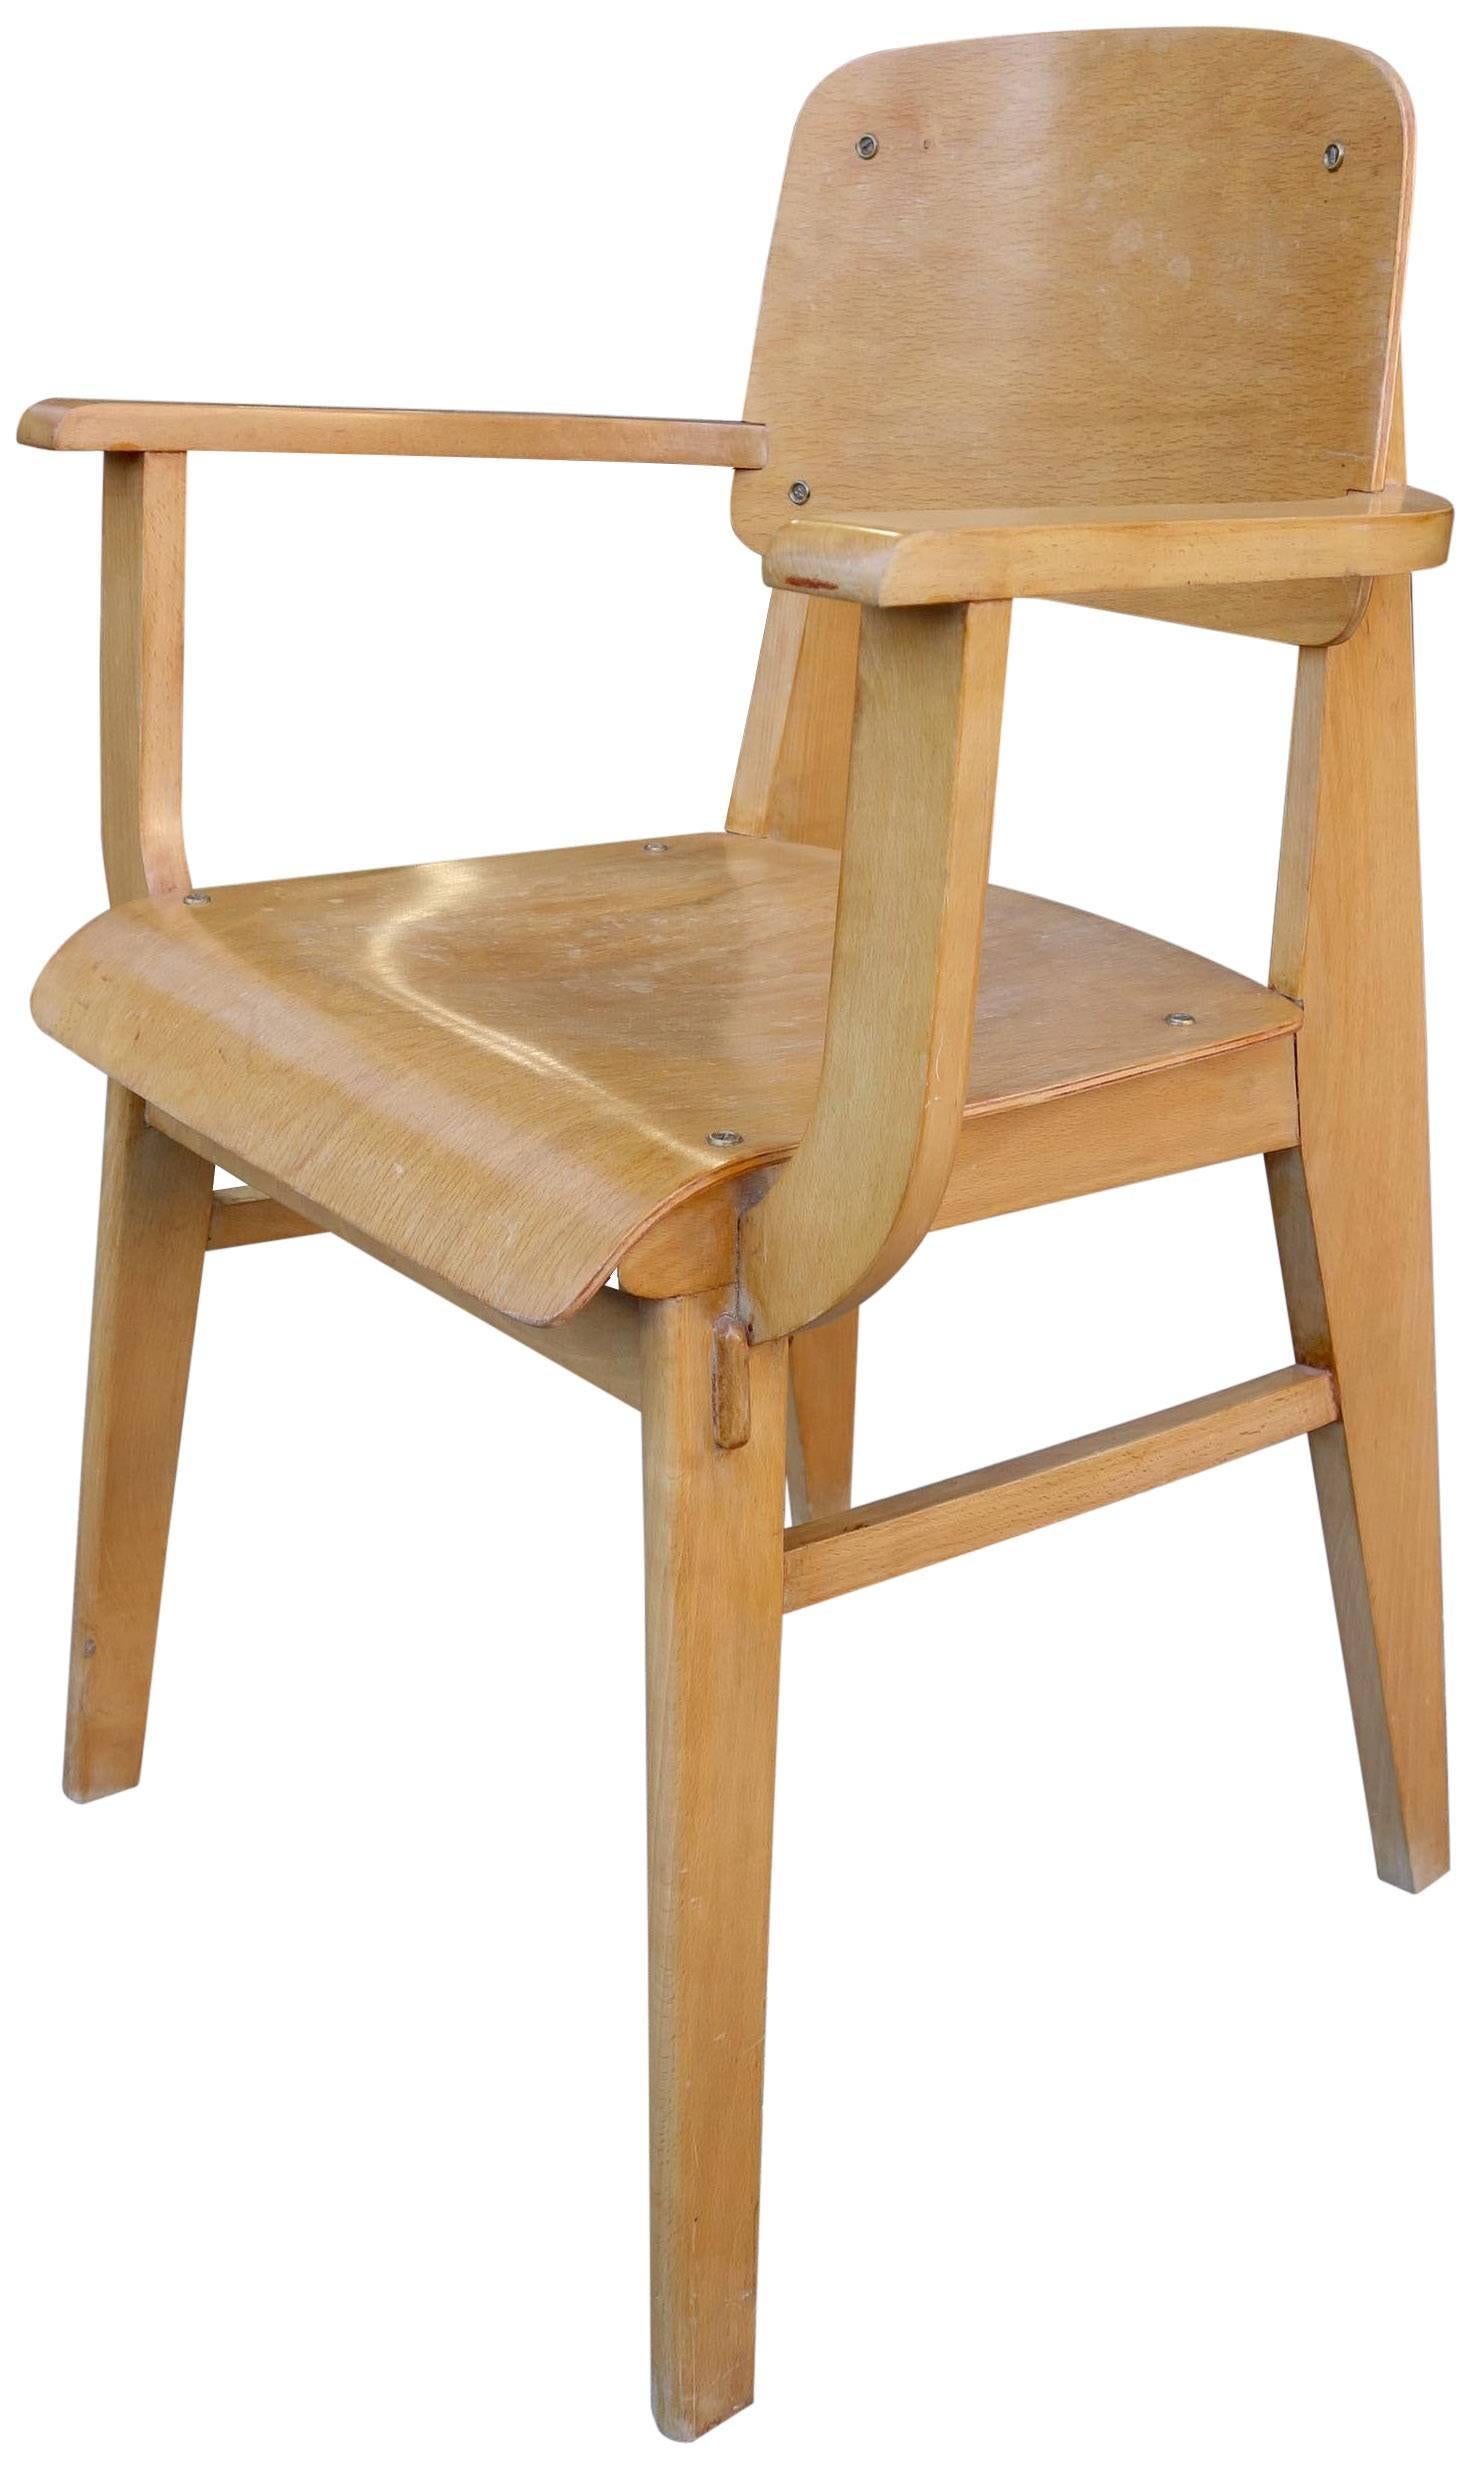 Chaise standard Jean Prouvé en bois pour les Ateliers Jean Prouvè 1941. Une pièce de collection rare. 